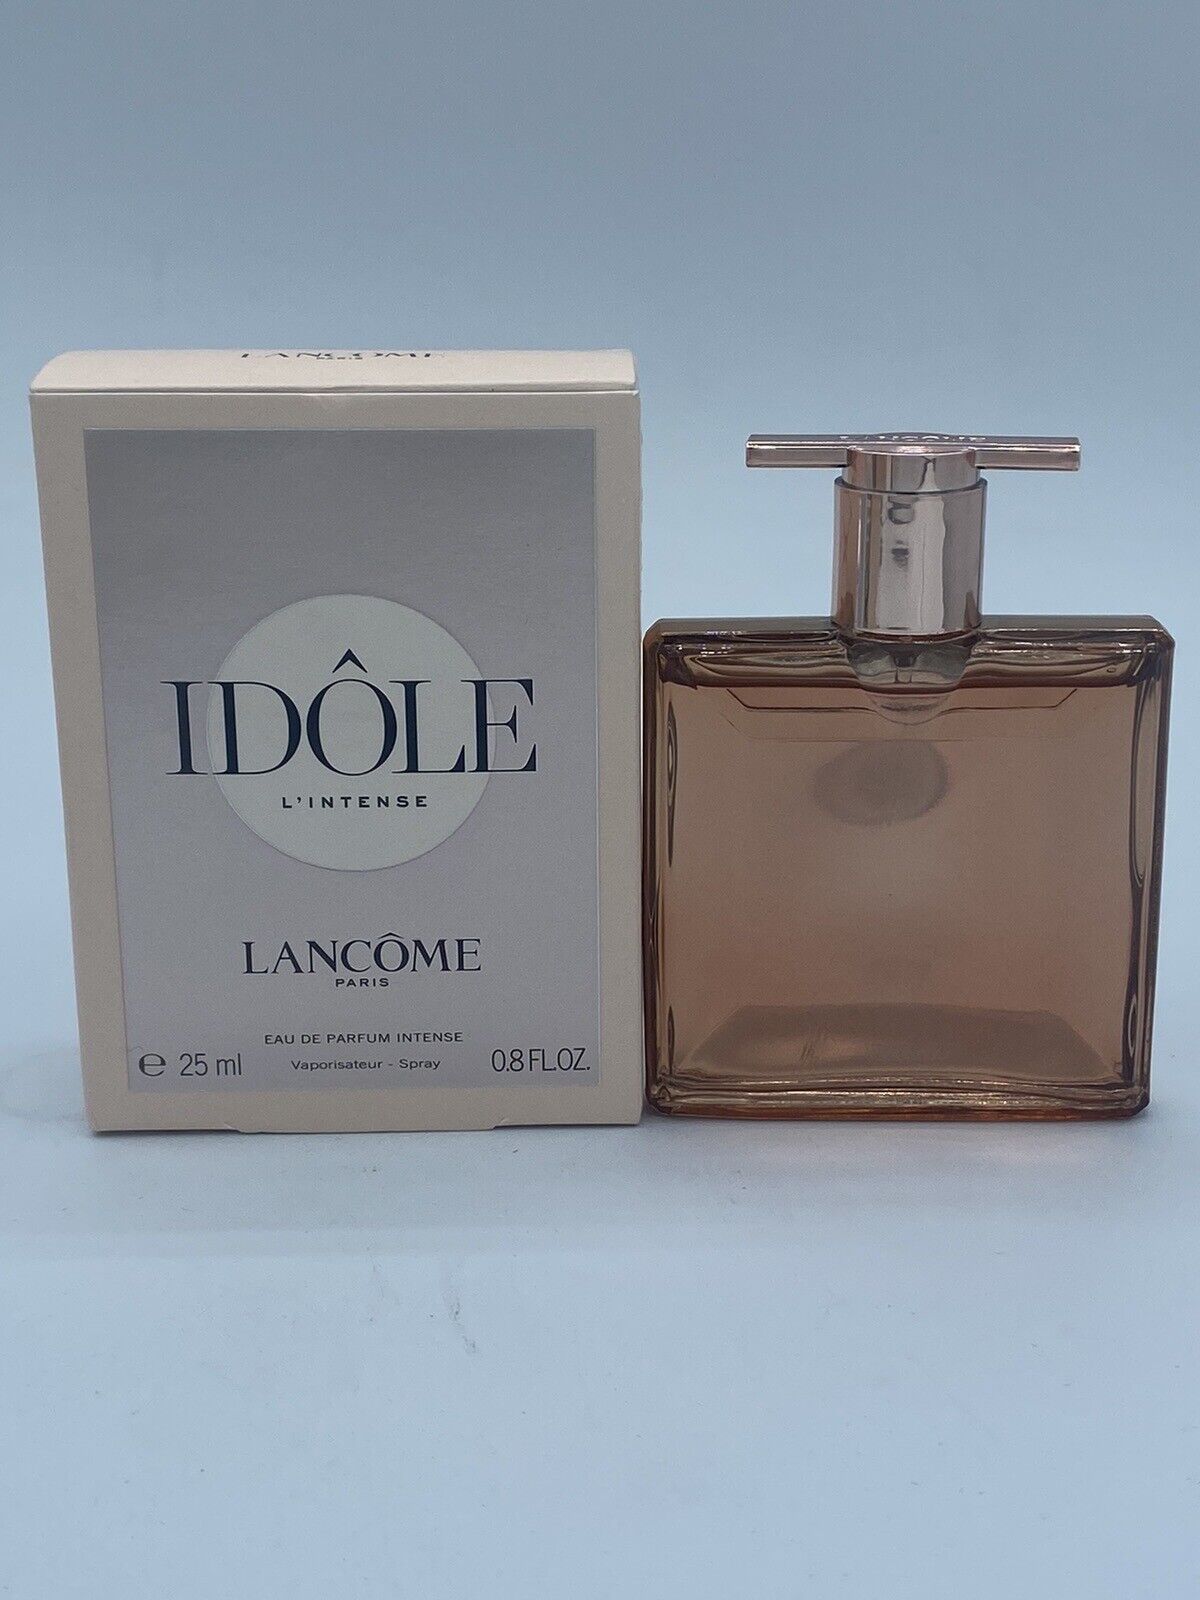 Idole by Lancome Eau de Parfum L’Intense 0.8 oz. 25 Ml About 95% Full Authentic.